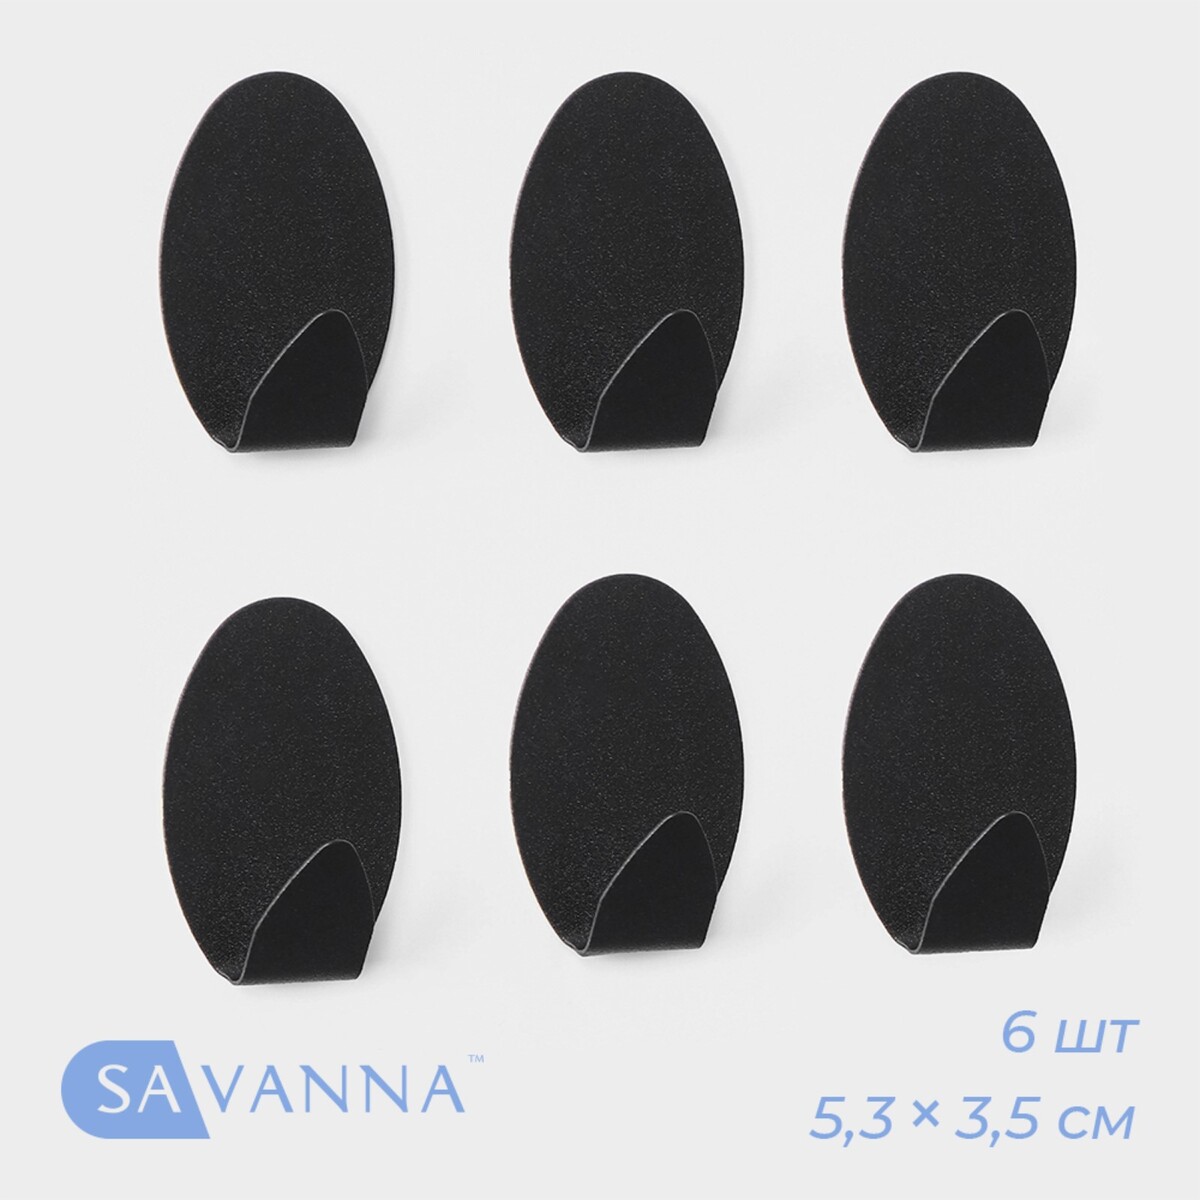     savanna black loft drop, 6 , 1, 9 5, 3 3, 5 